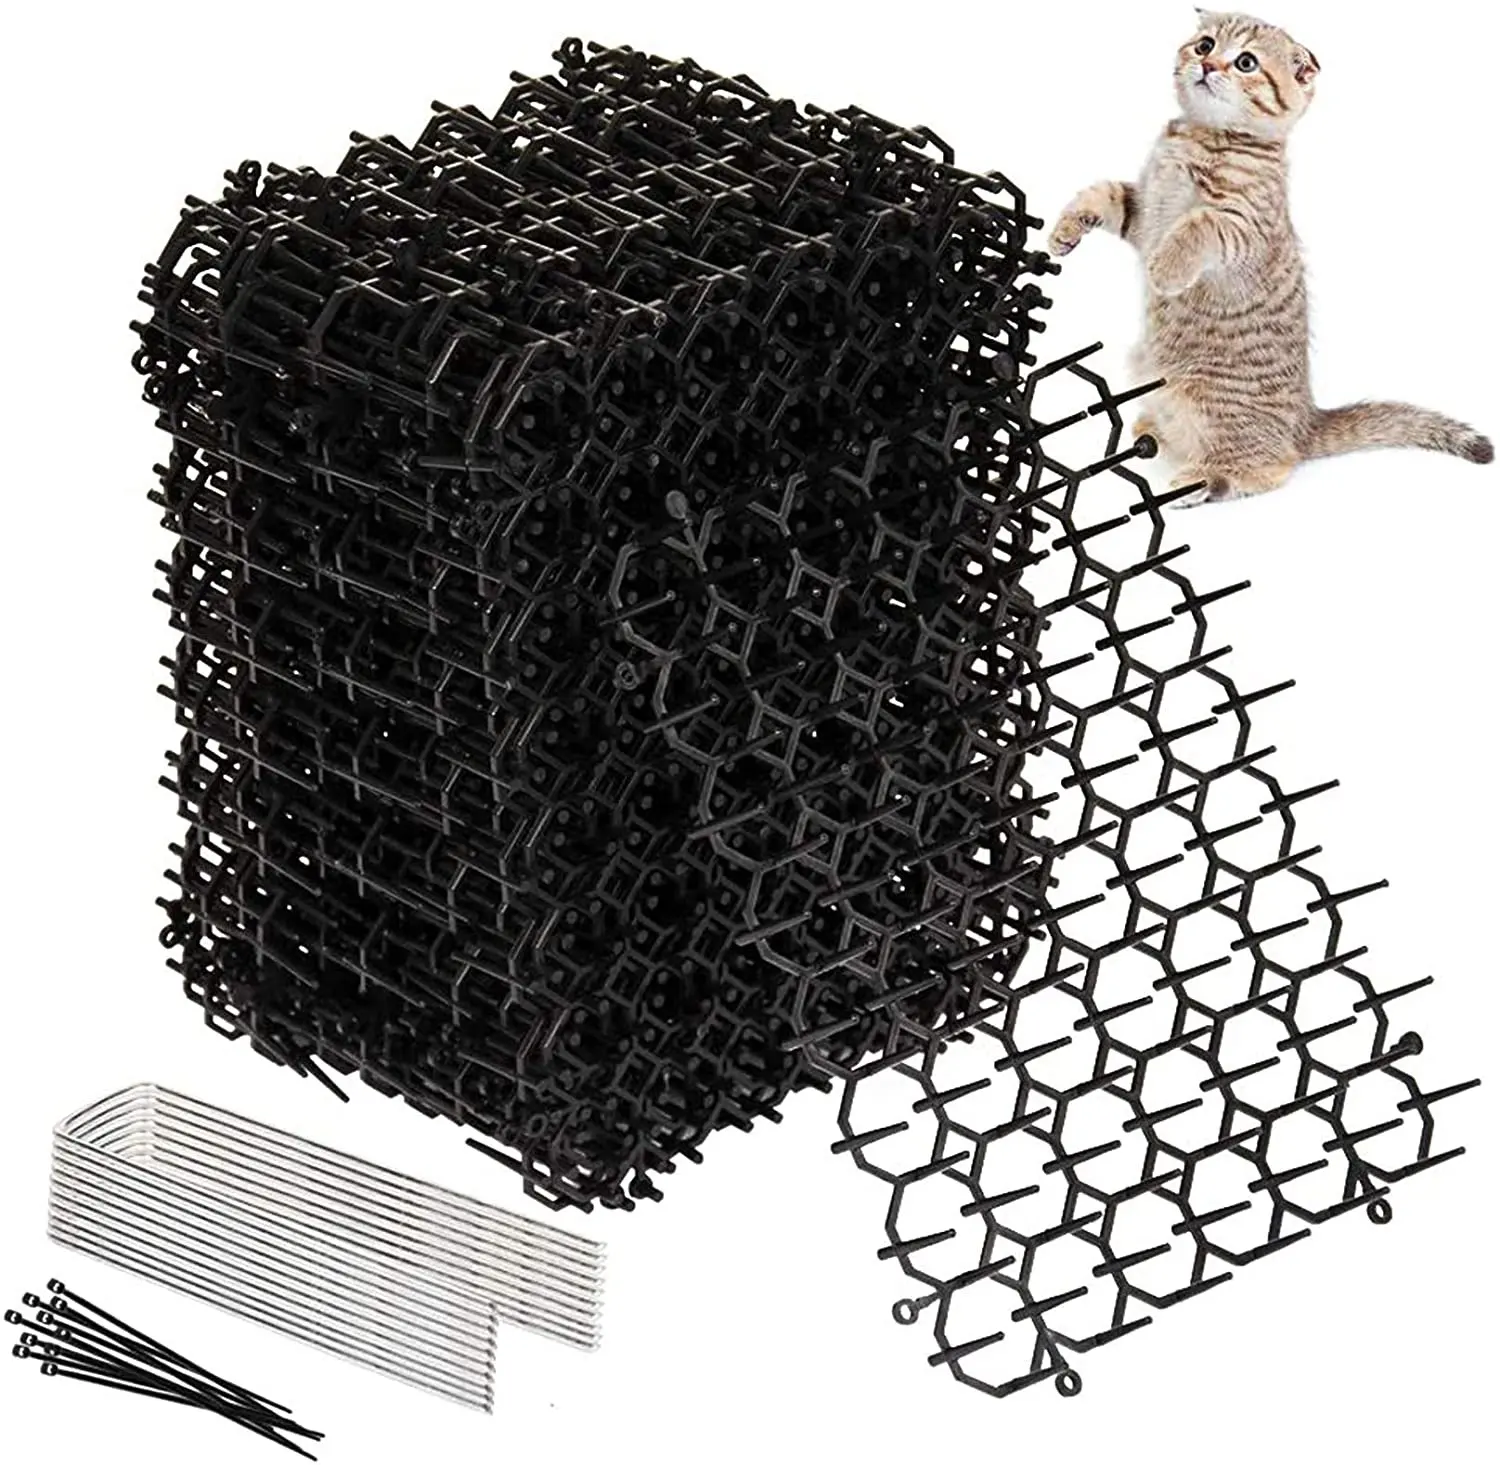 저렴한 고양이 스캣 매트 안티 고양이 네트워크 파기 스토퍼 가시 스트립 홈 해충 구충제